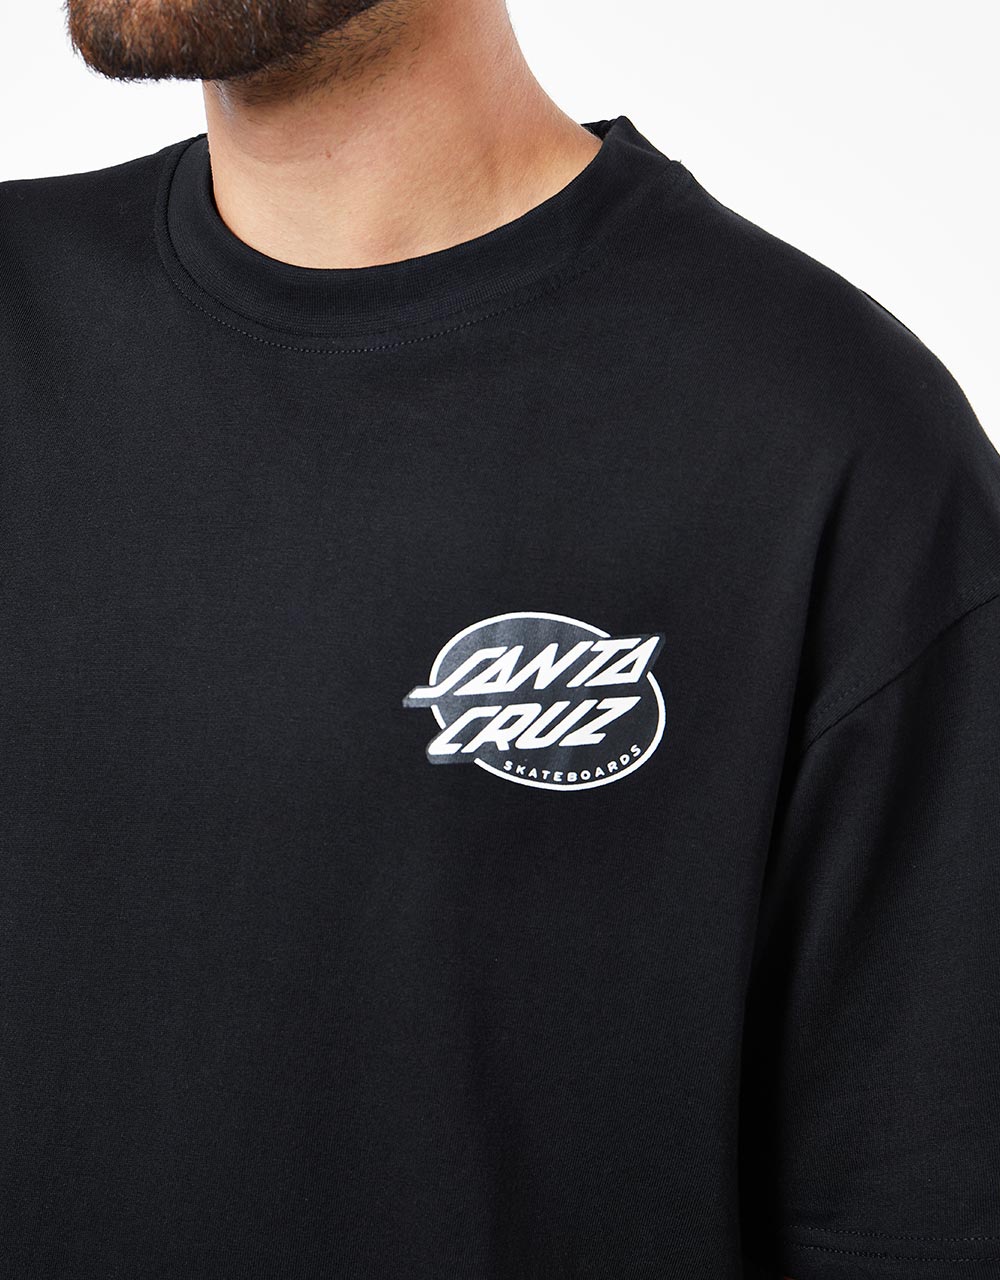 Santa Cruz Winkowski Vision T-Shirt - Black